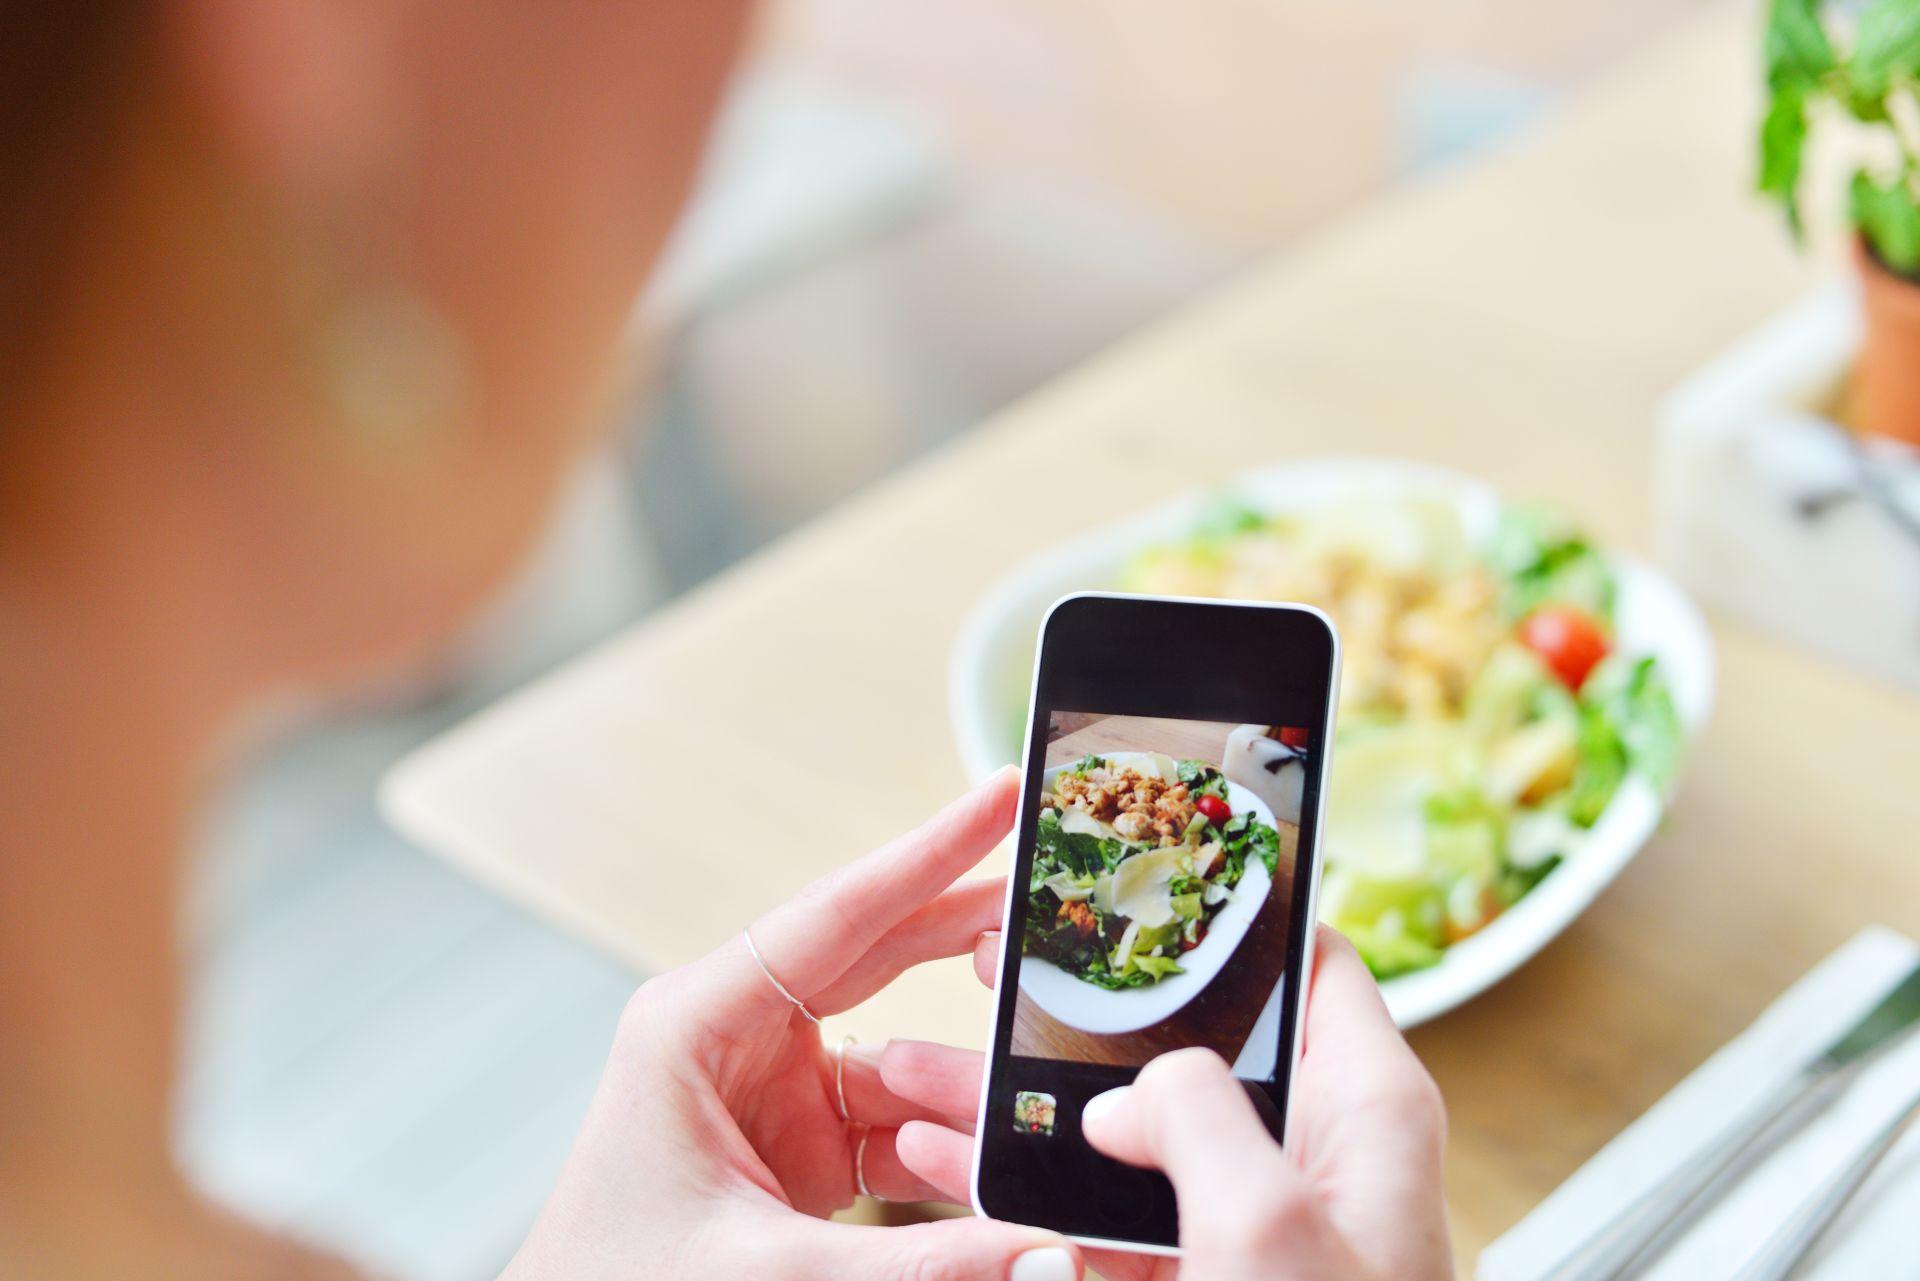 Das Smartphone kann helfen, den Kohlenhydratgehalt des Essens im Blick zu haben.